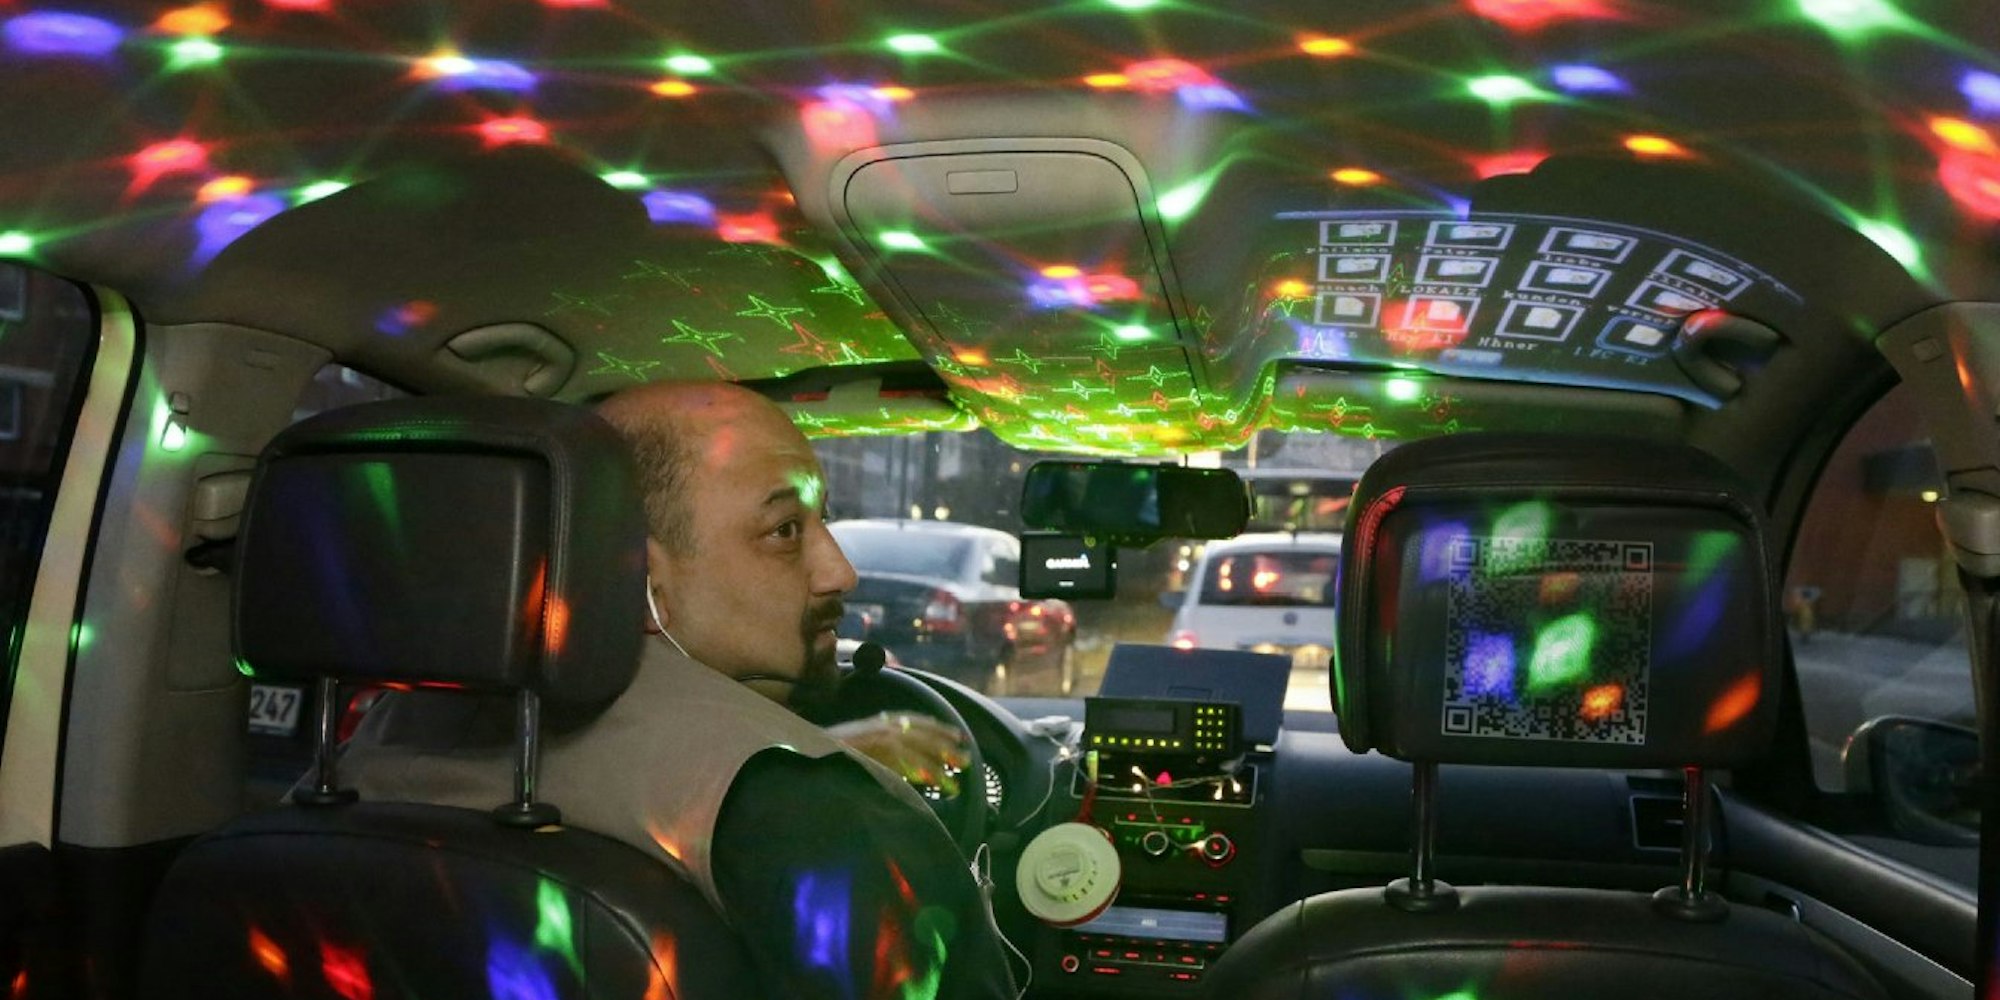 Kürsat in seinem zur Disco umgebauten Taxi. Die Lasershow kommt bei seinen Kunden super an.